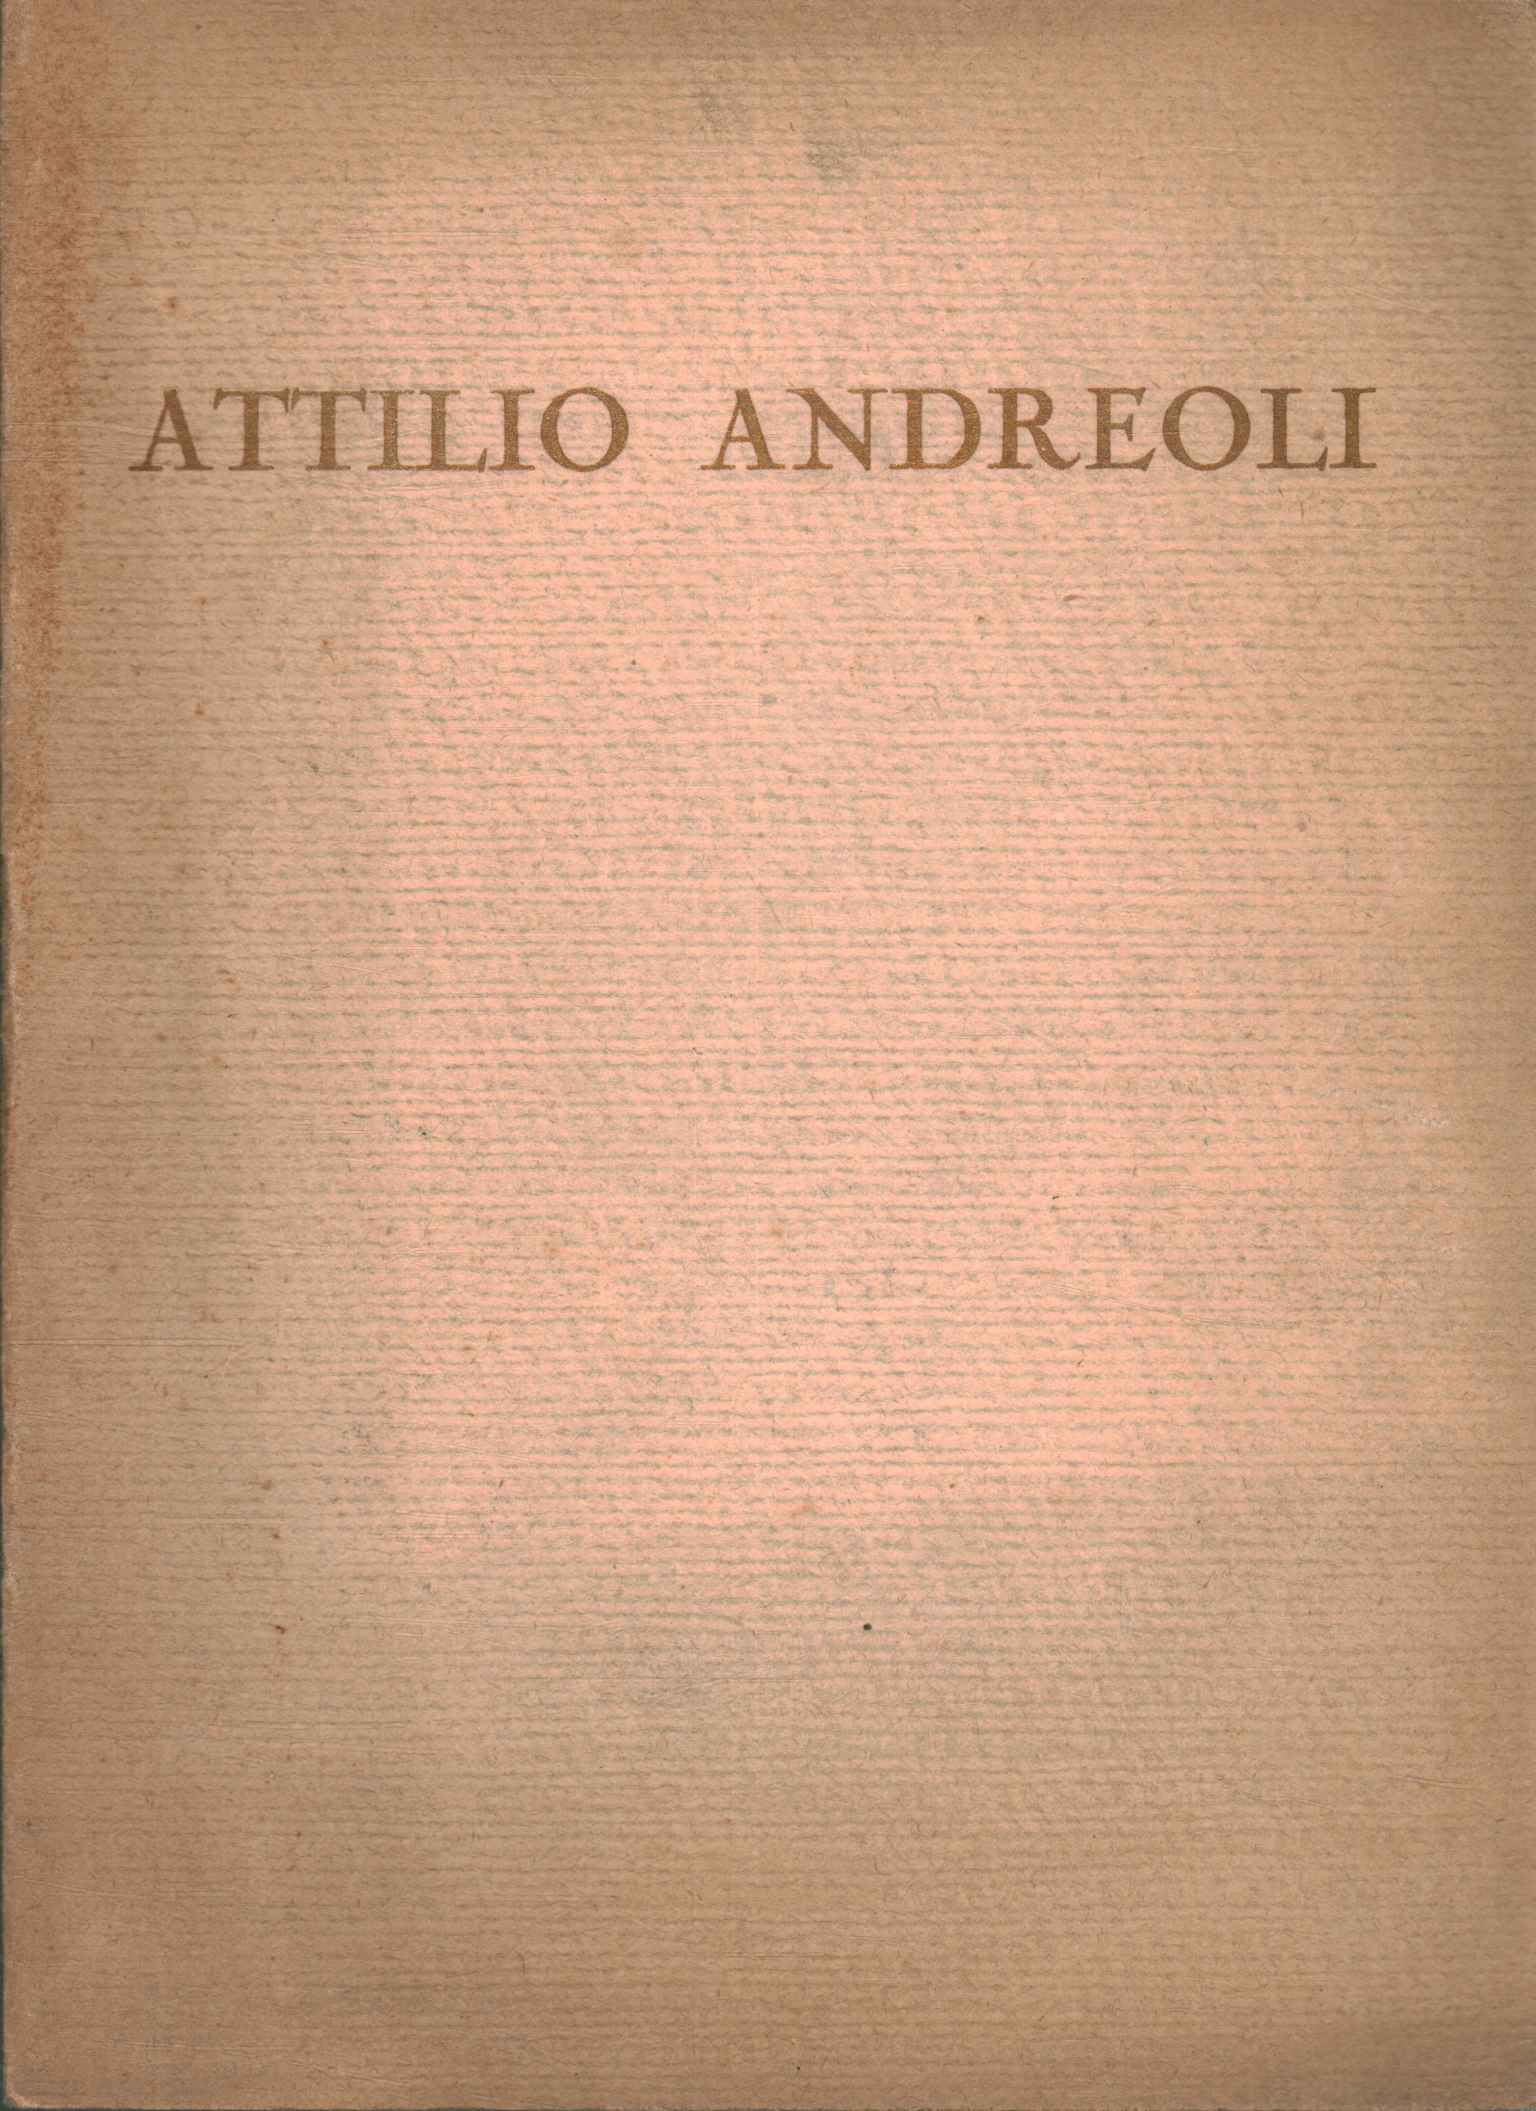 Attilio Andréoli